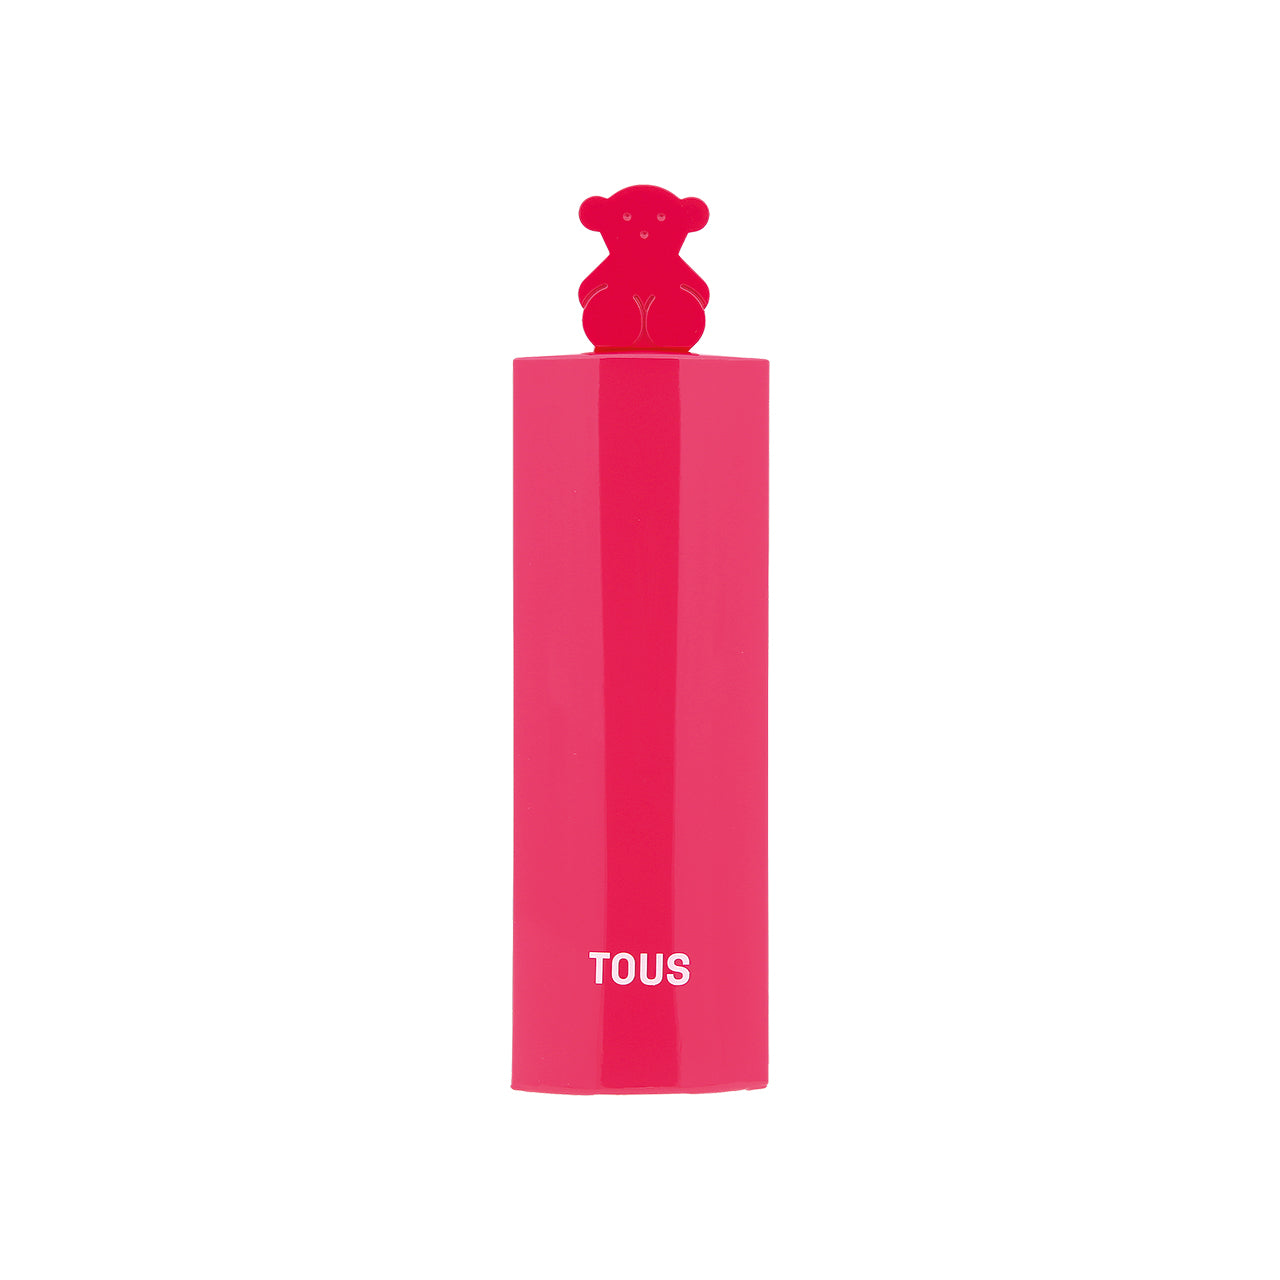 Tous More More Pink Eau de Toilette 90ml | Sasa Global eShop